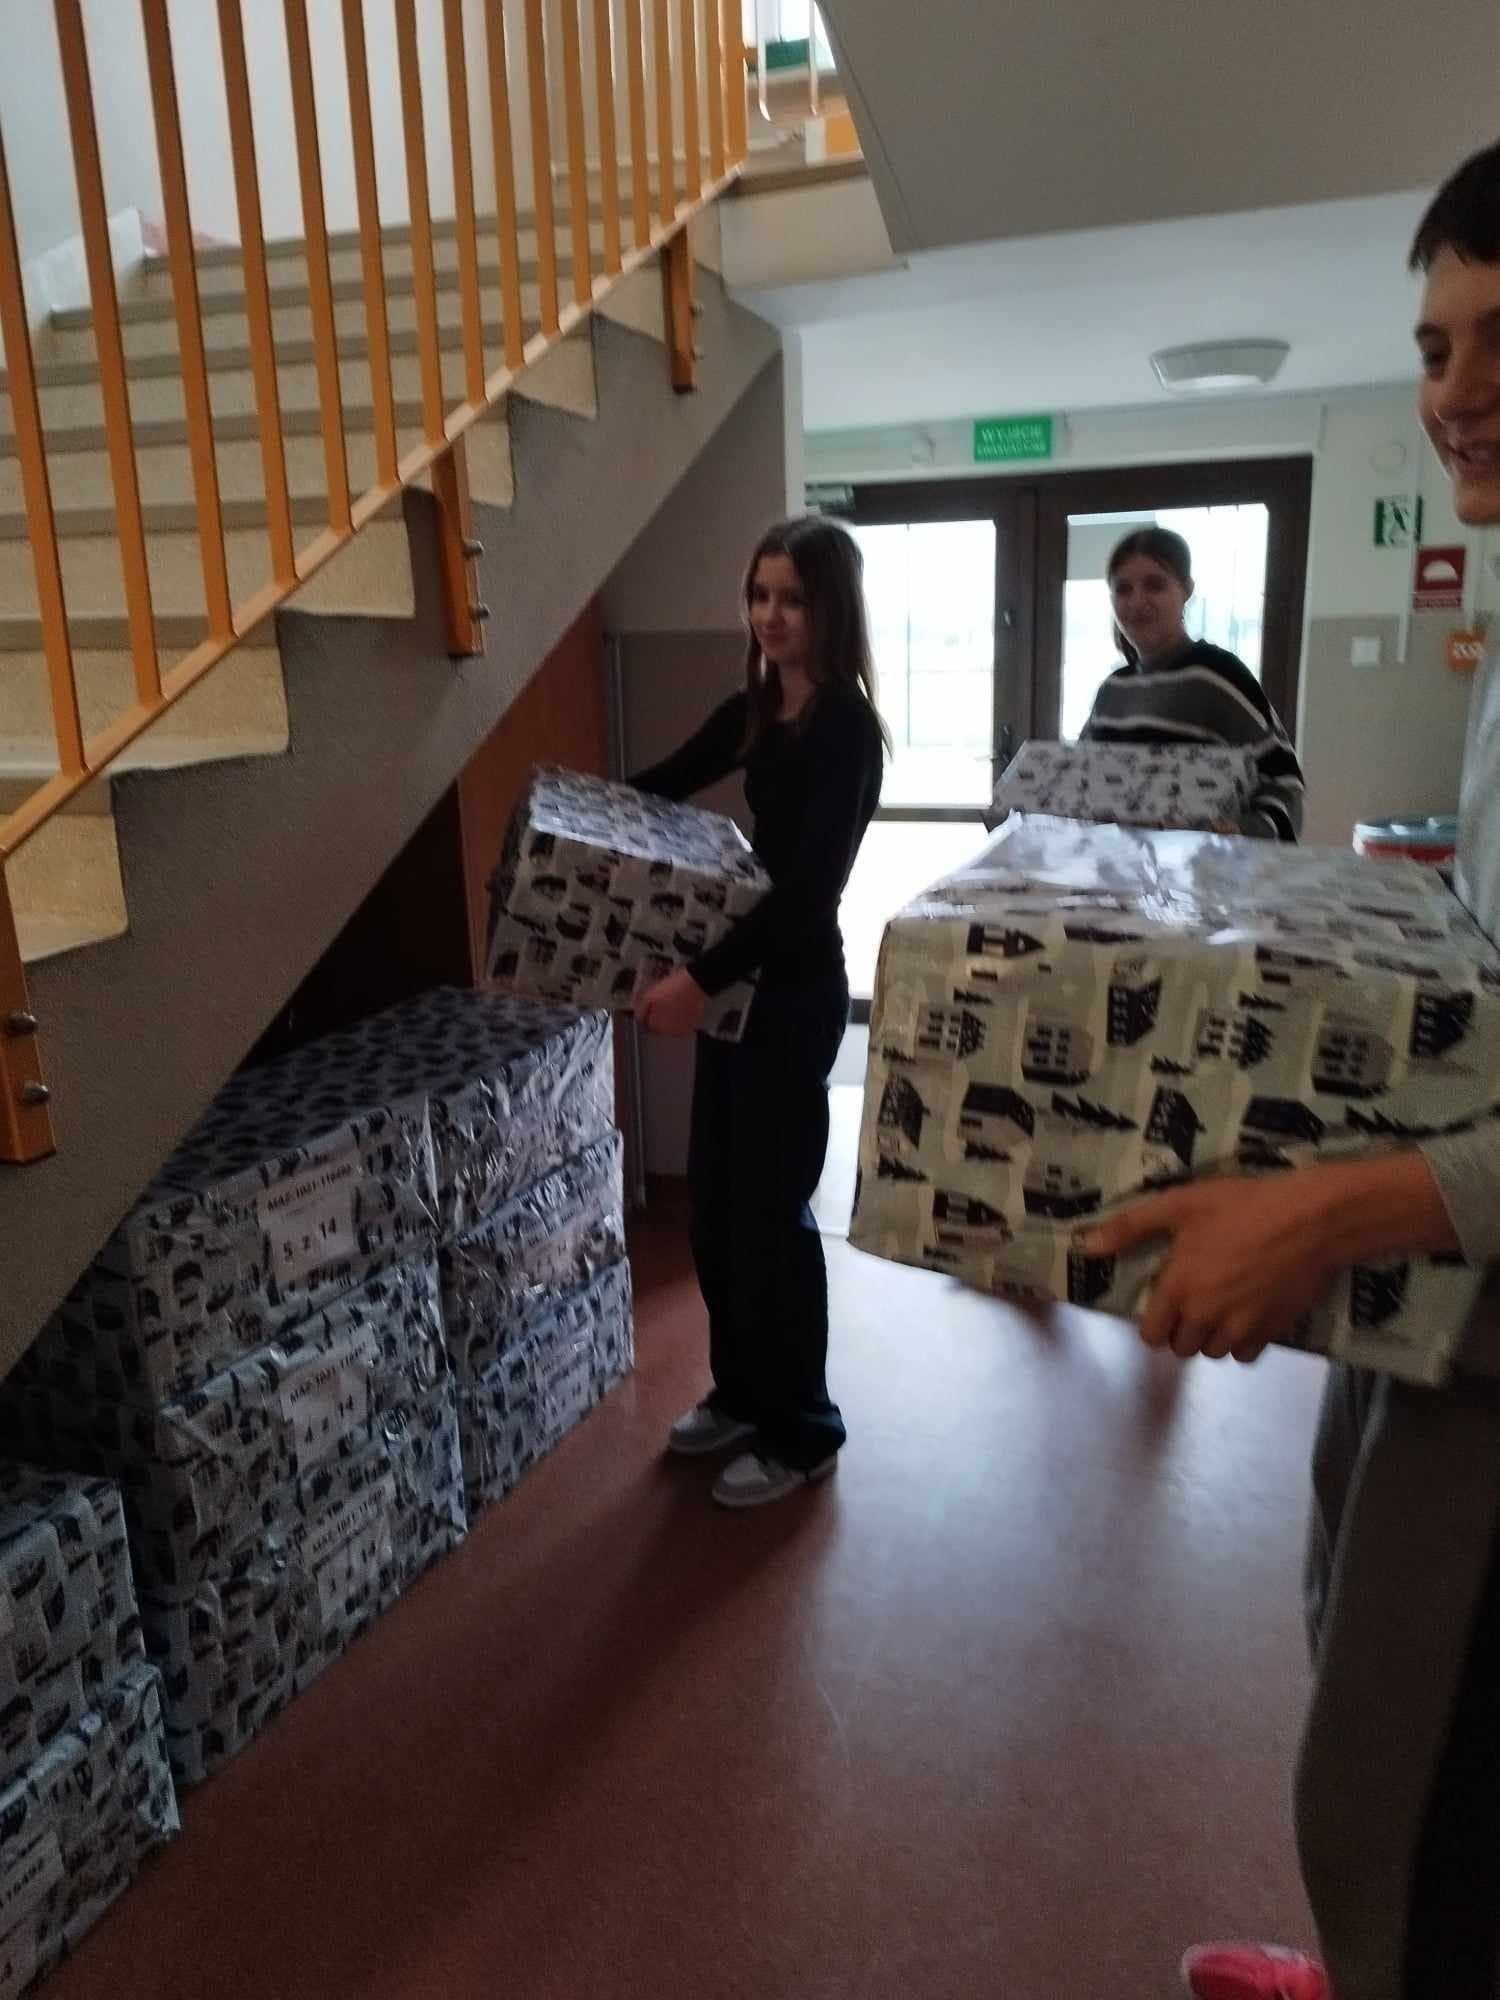 Uczniowie układają paczki na korytarzu